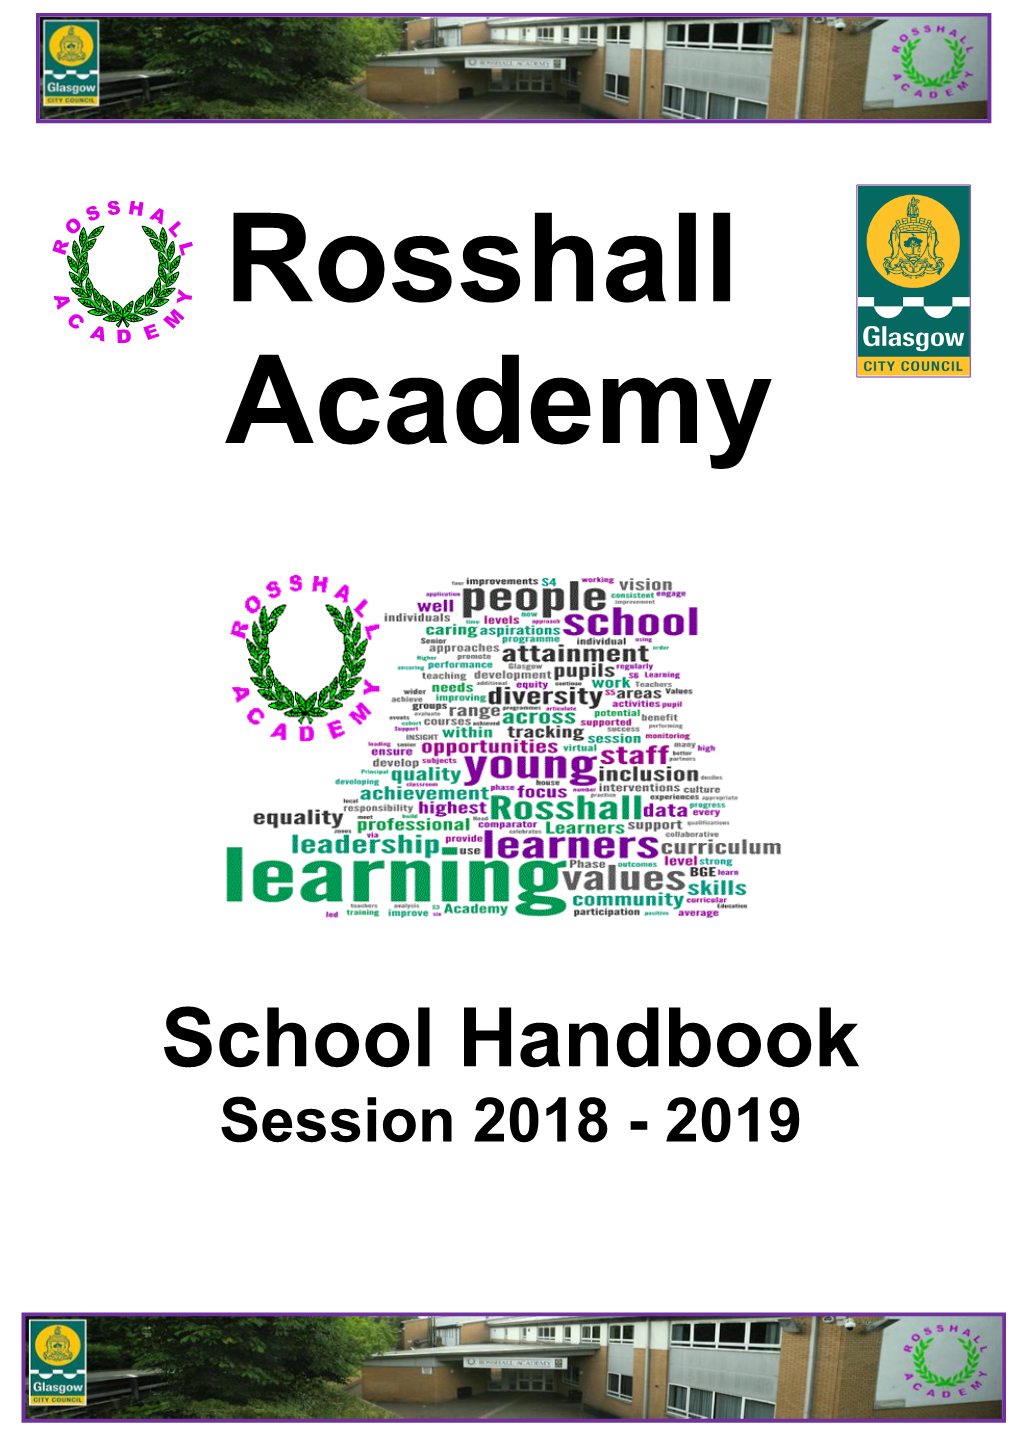 Rosshall Academy School Handbook